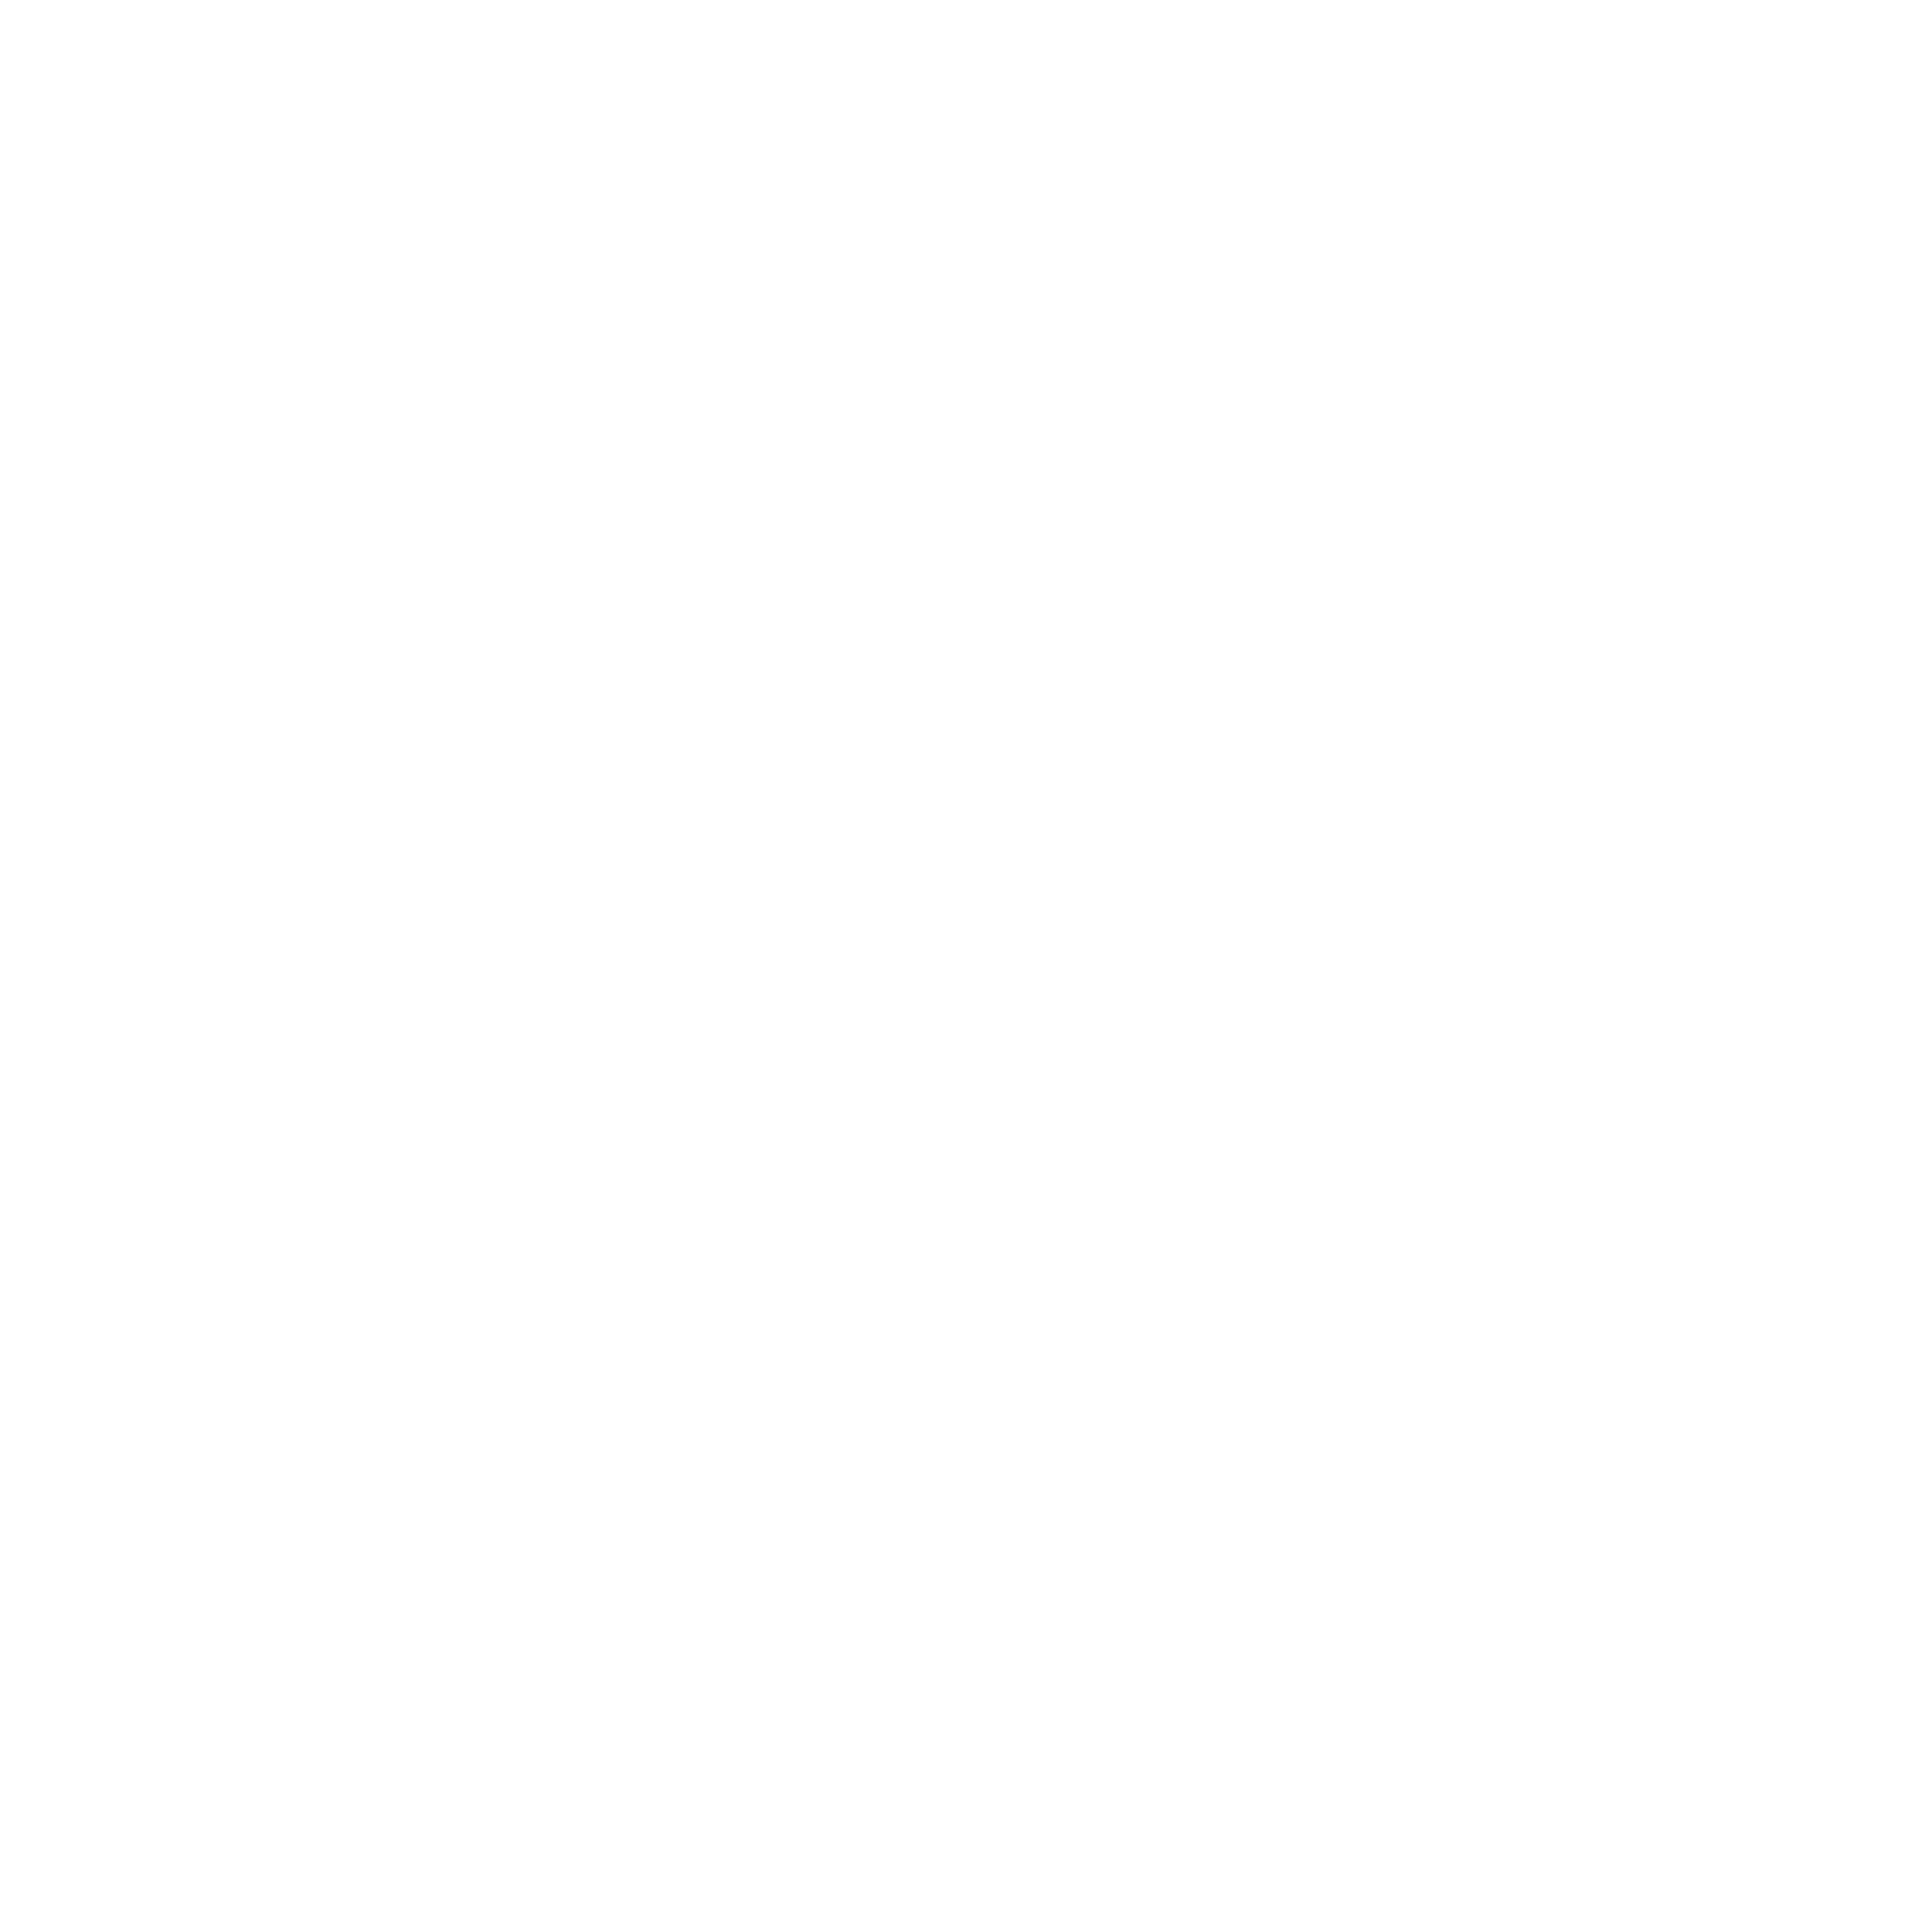 Simple white snowflake